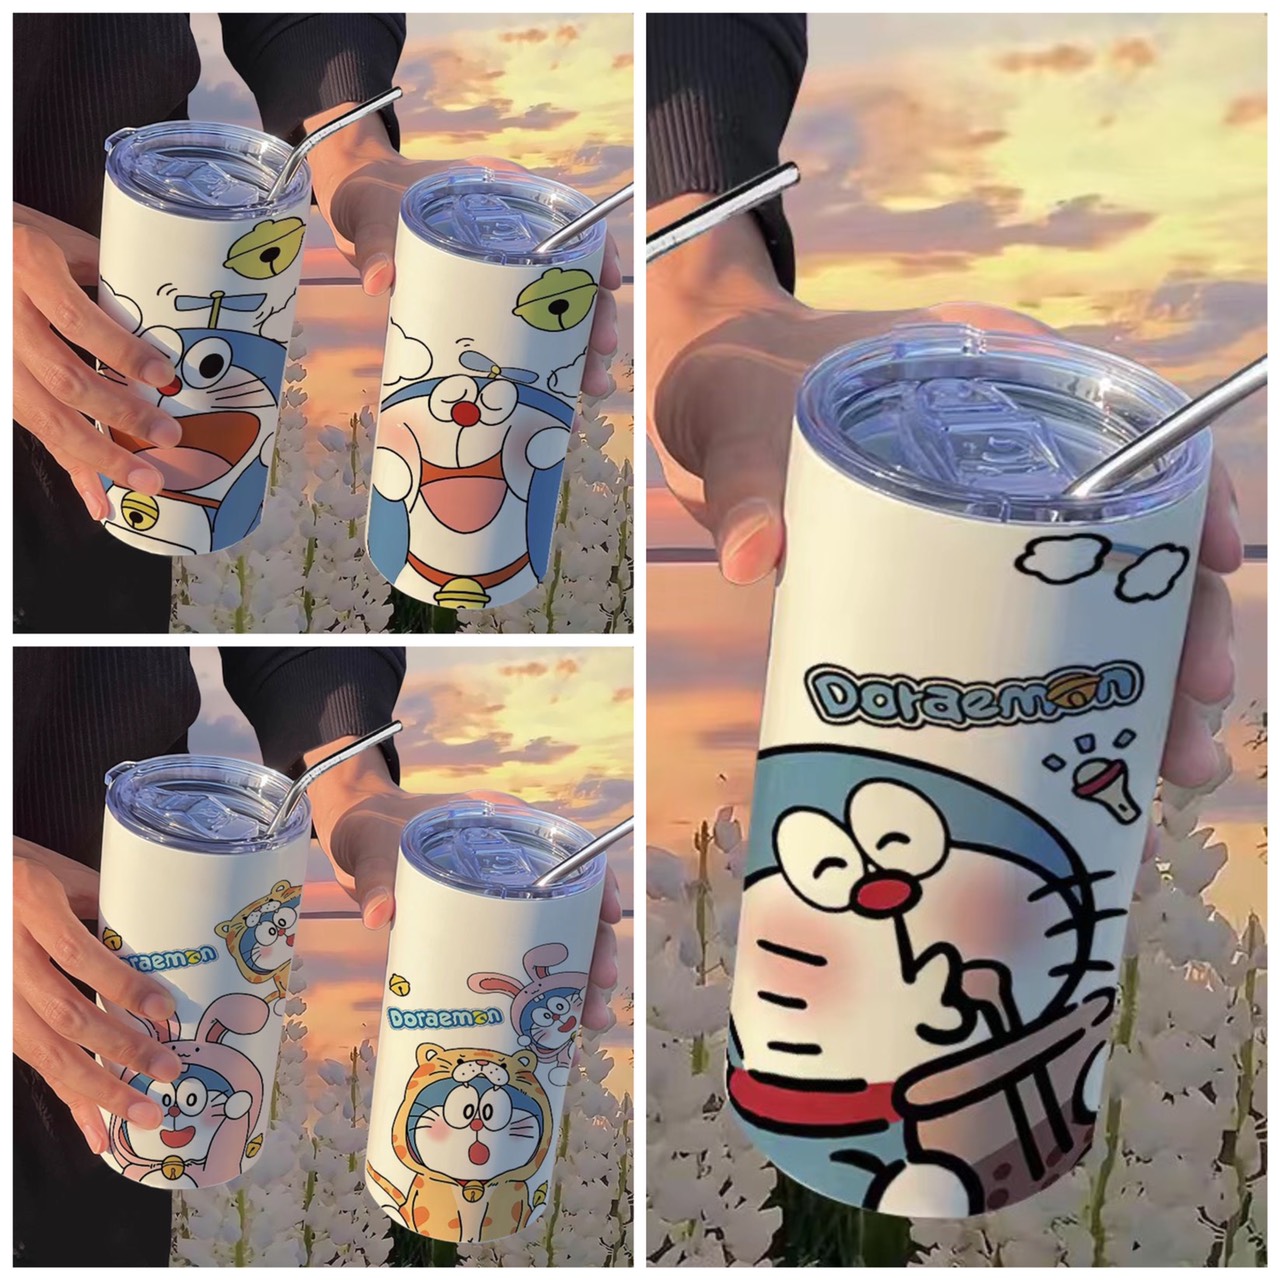 [ 600ml ] Ly giữ nhiệt Doraemon inox 304 an toàn chống gỉ cao cấp, Bình giữ nhiệt inox 304 Doremon tặng kèm ống hút cao cấp